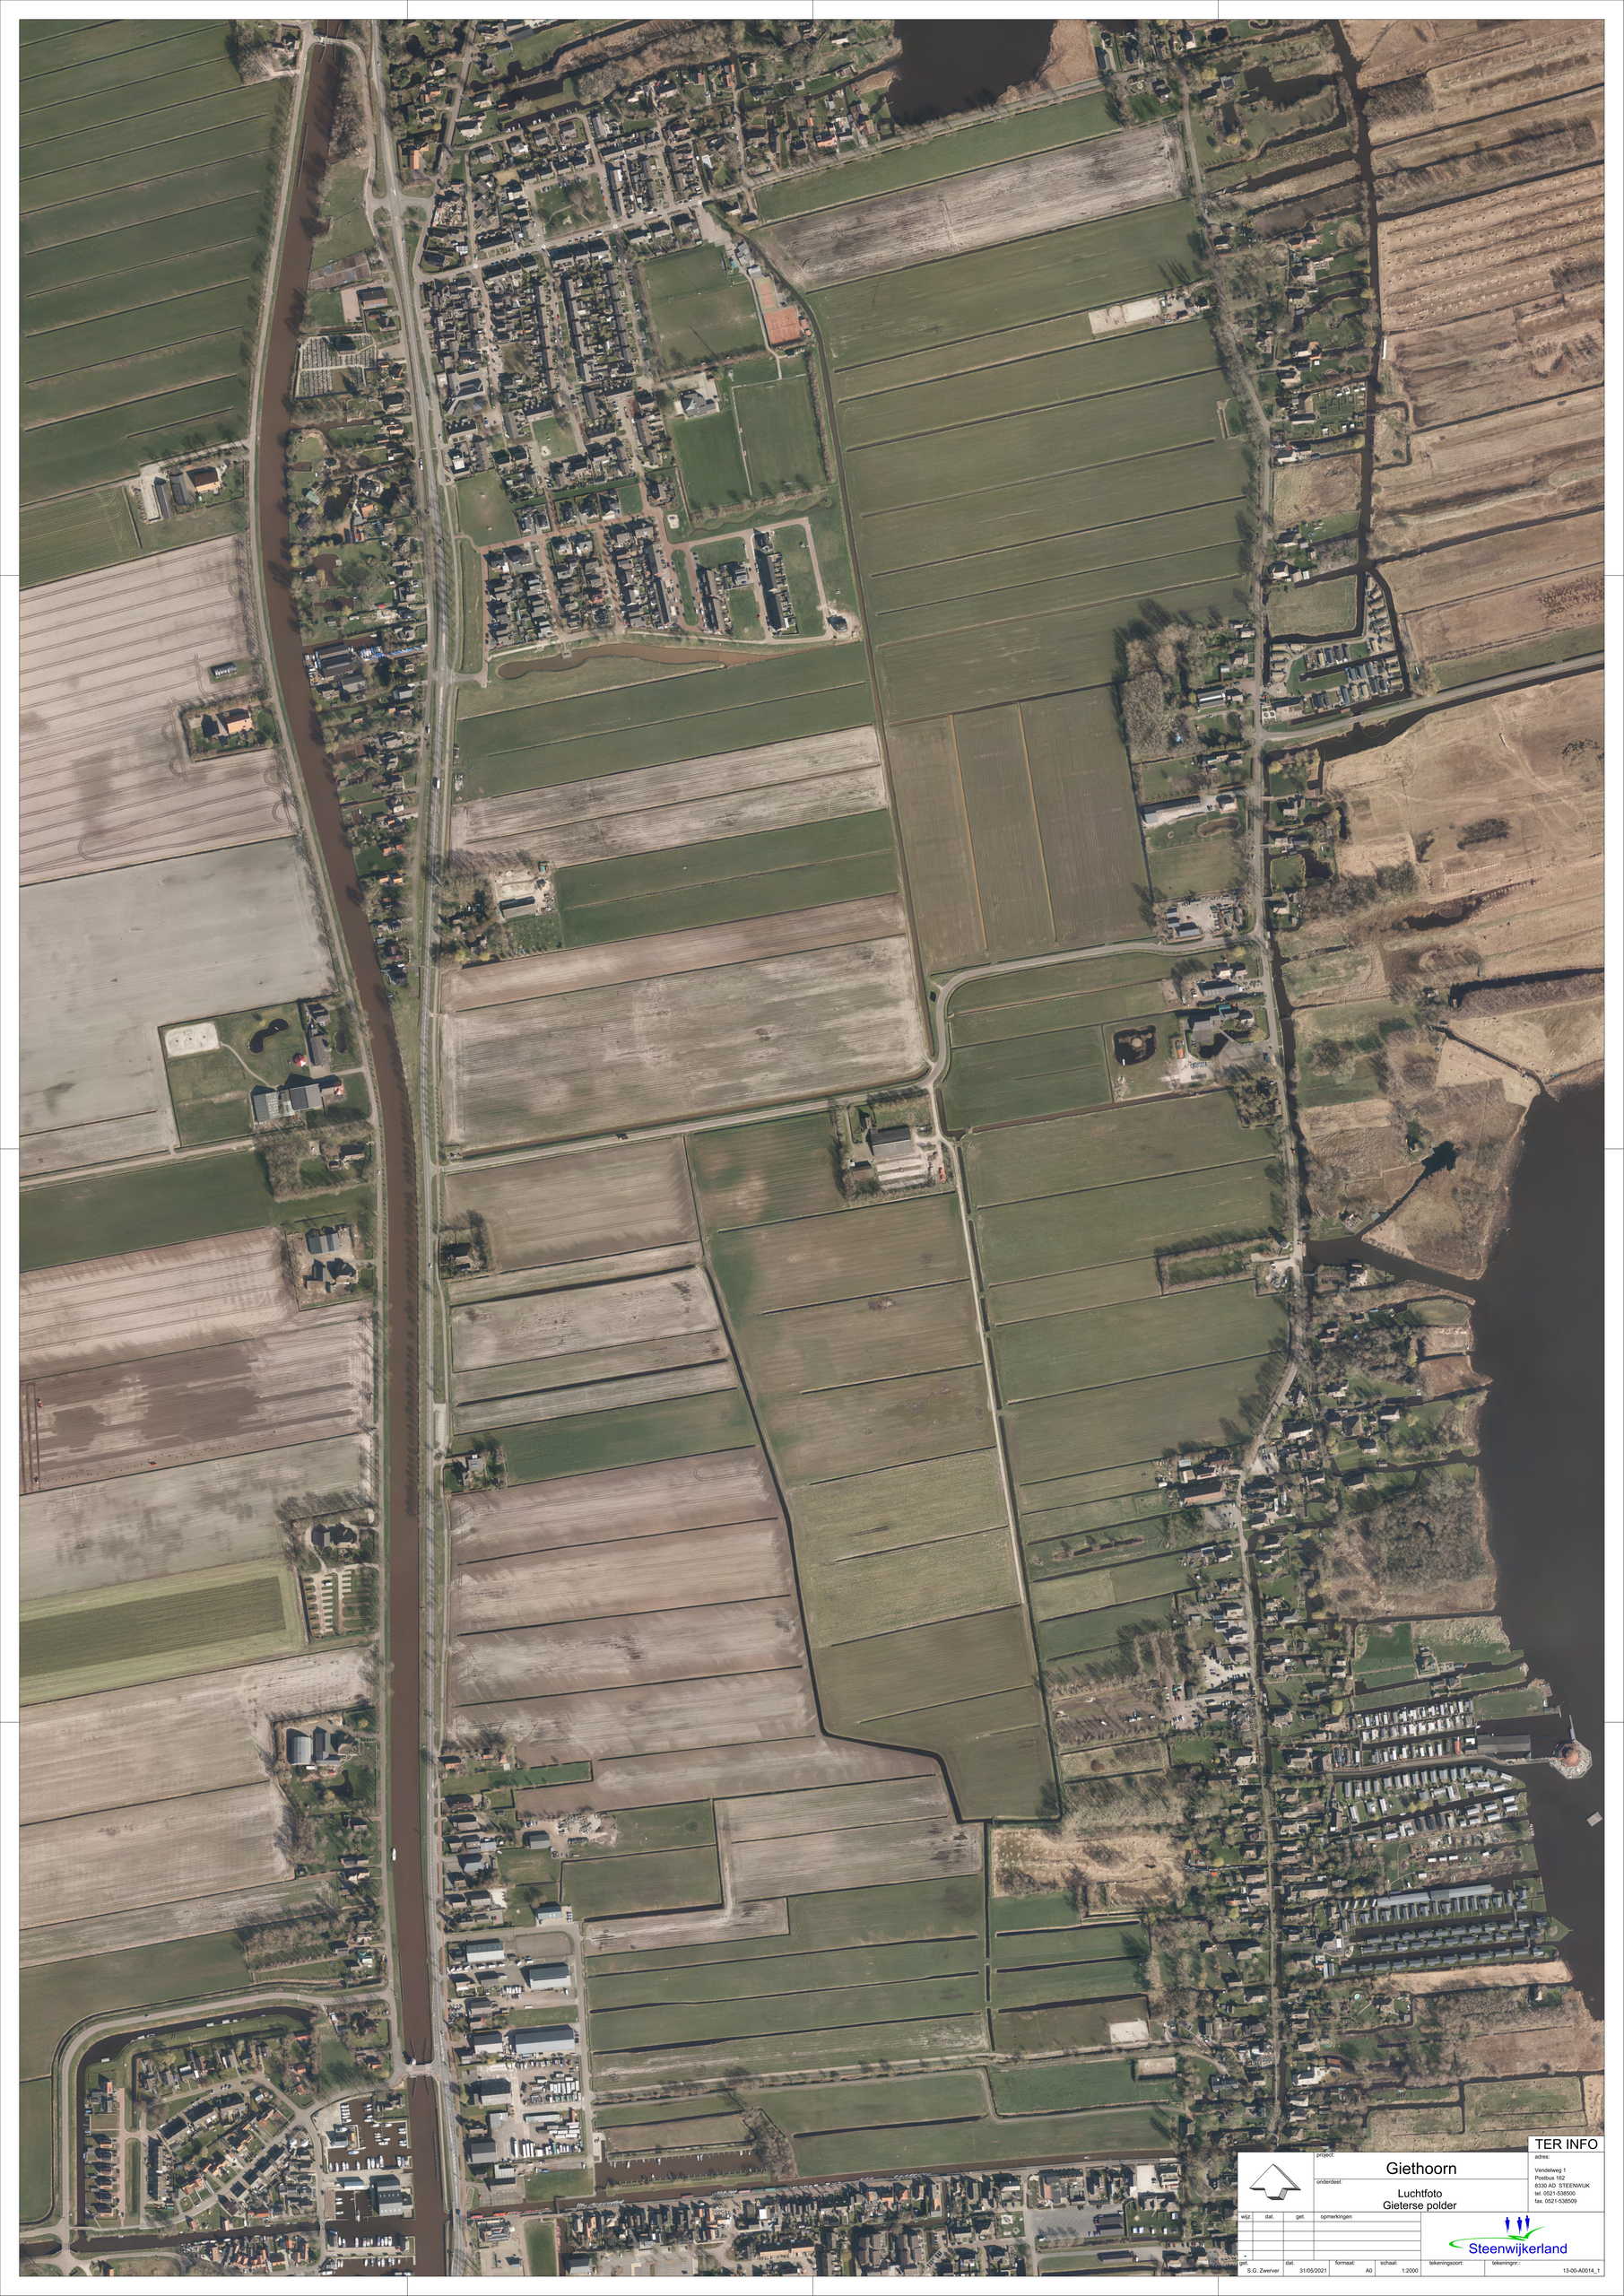 luchtfoto locatie Gieterse polder en centrumgebied